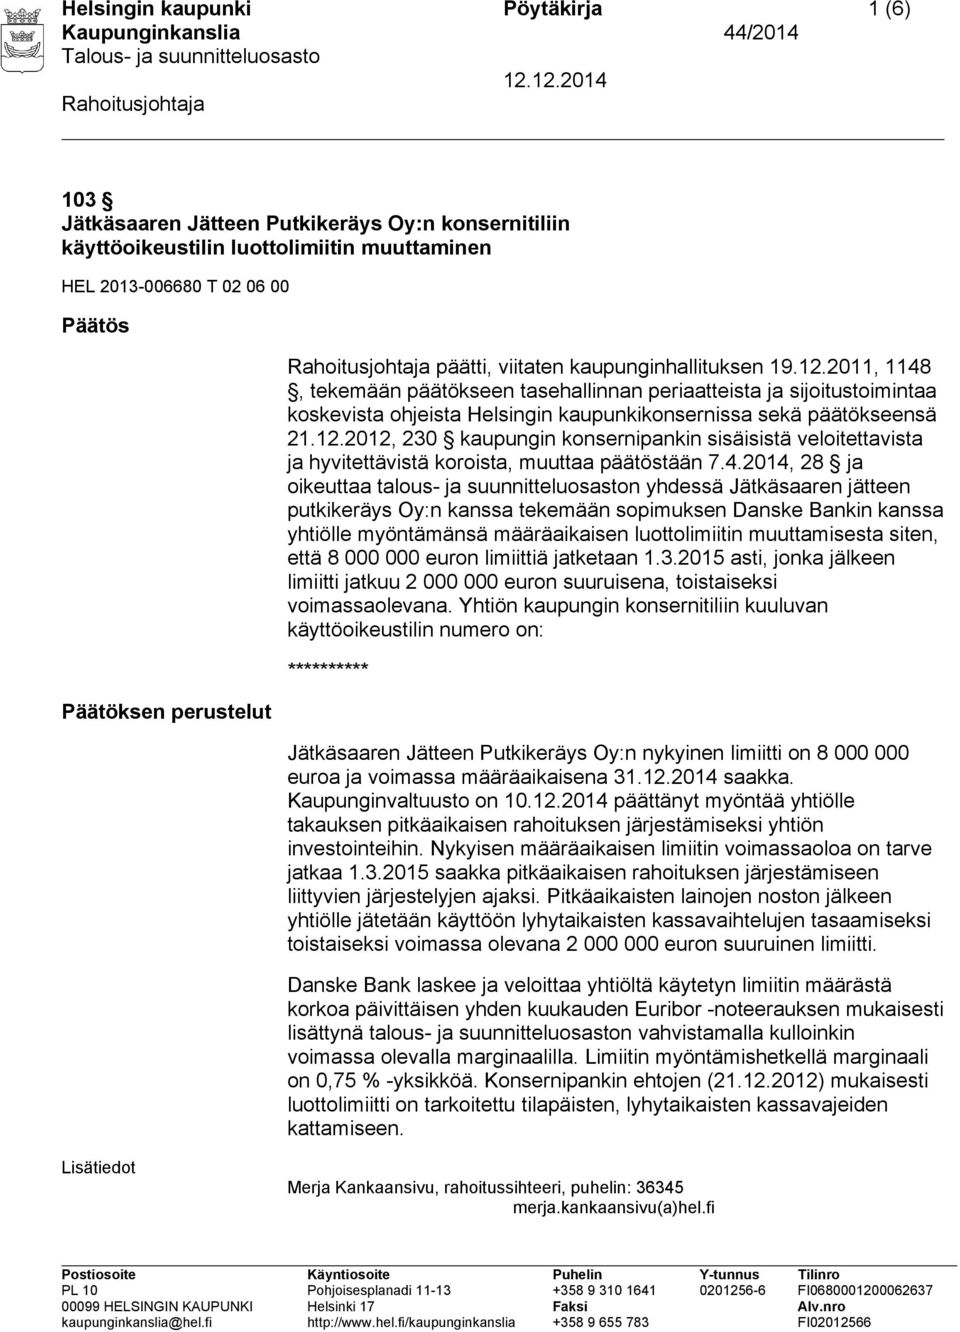 4.2014, 28 ja oikeuttaa talous- ja suunnitteluosaston yhdessä Jätkäsaaren jätteen putkikeräys Oy:n kanssa tekemään sopimuksen Danske Bankin kanssa yhtiölle myöntämänsä määräaikaisen luottolimiitin